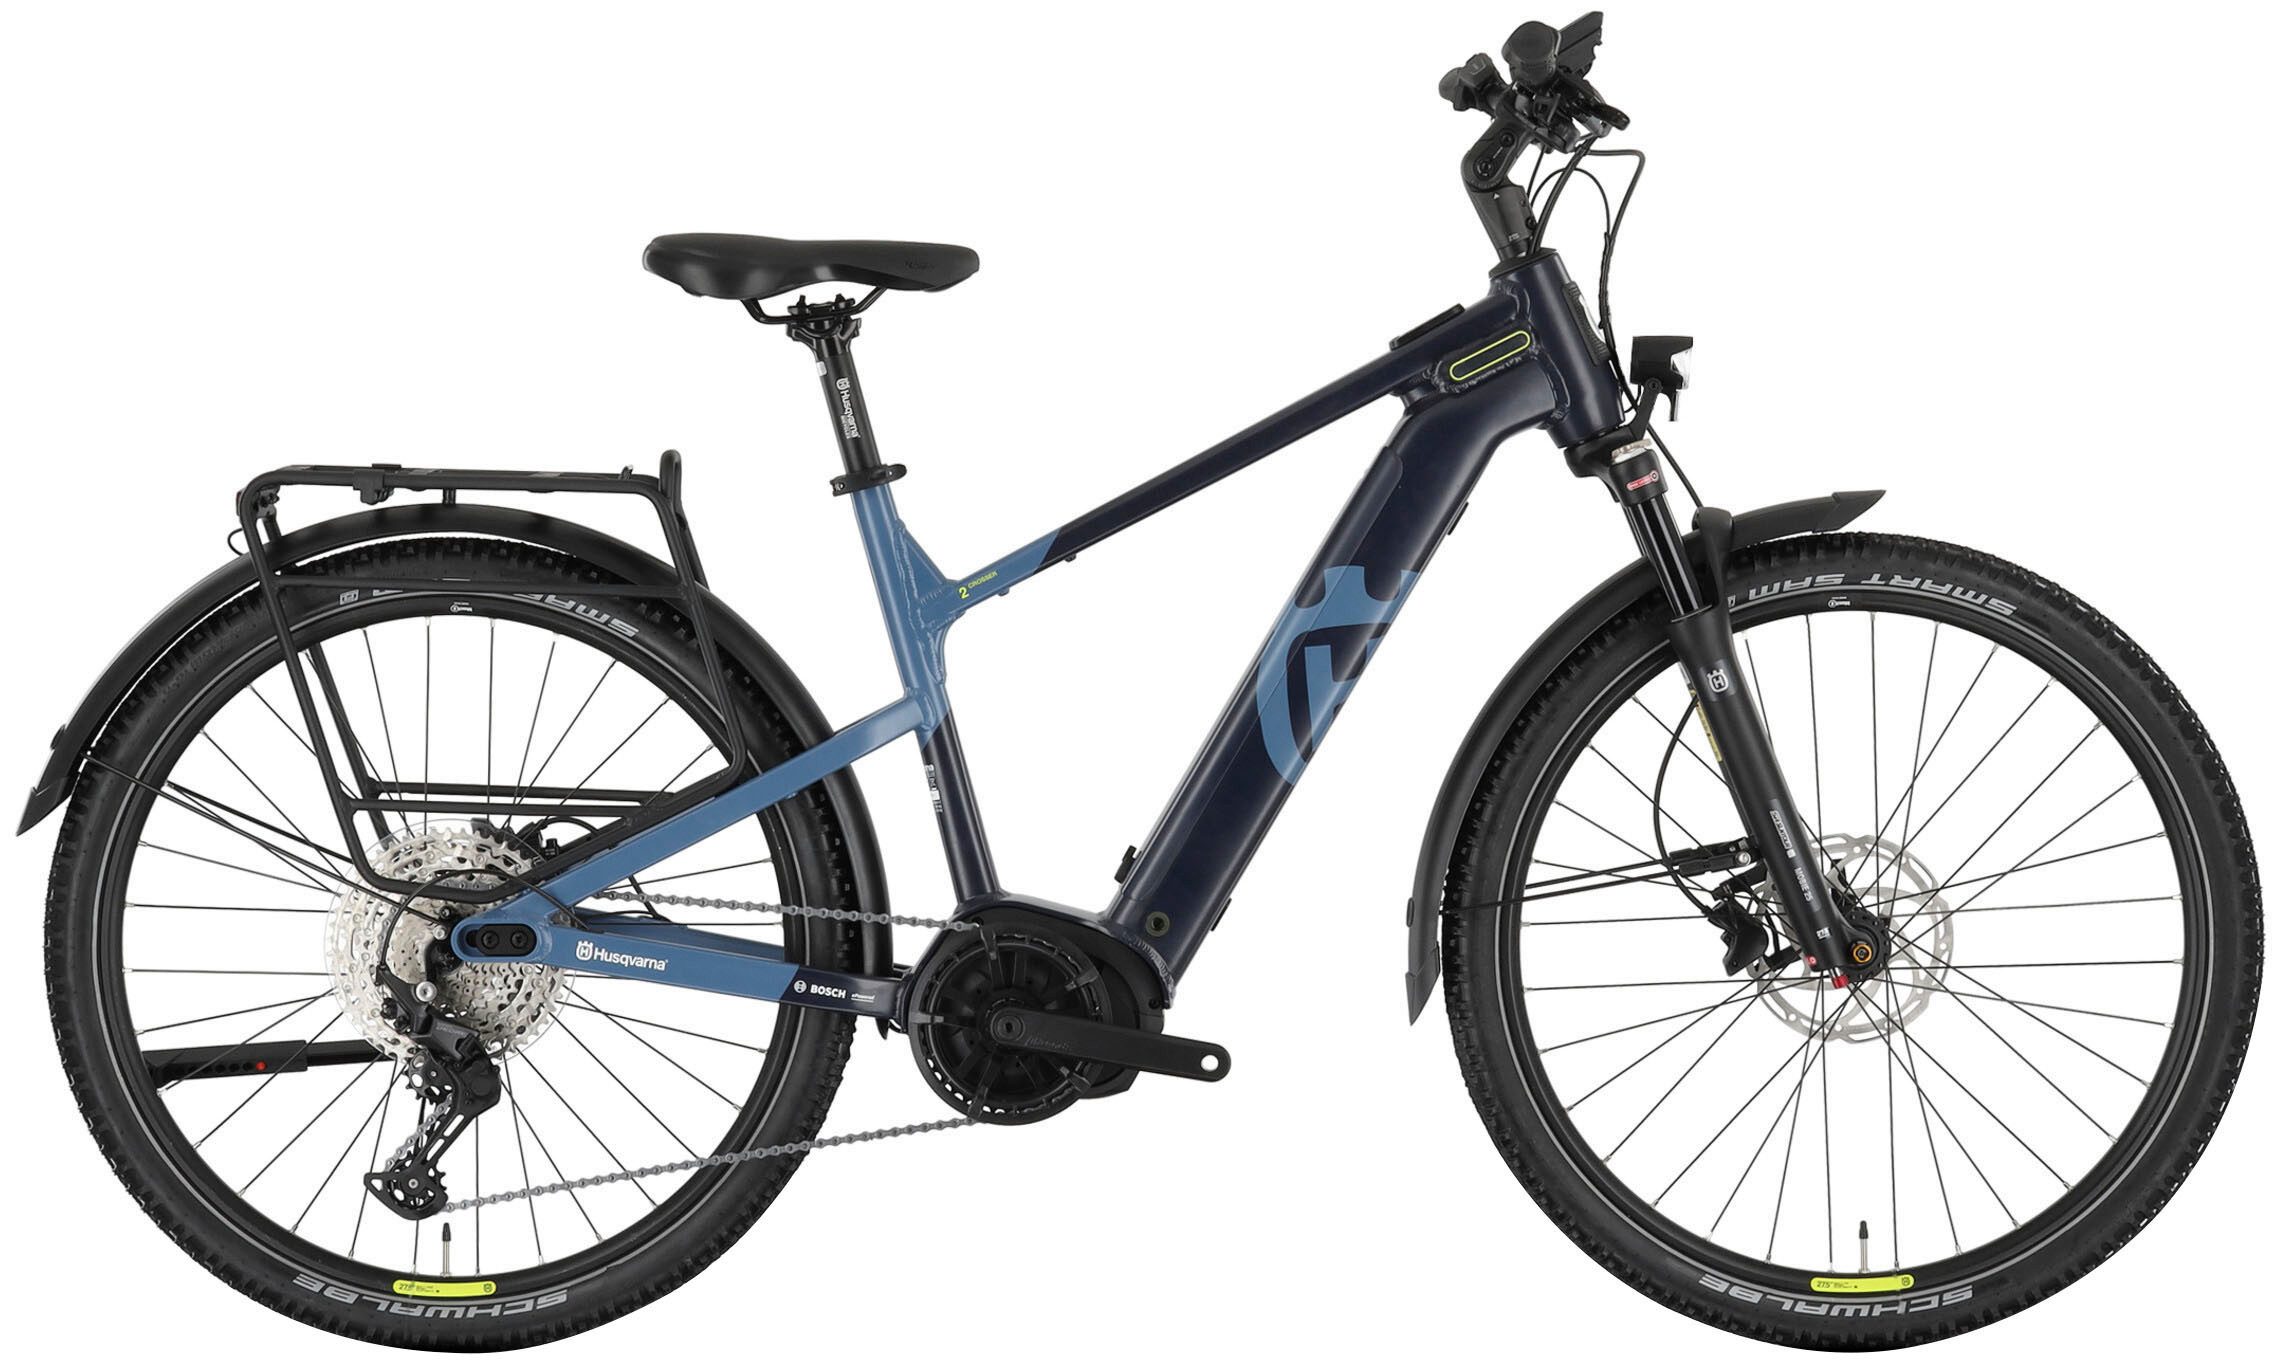 Husqvarna E-BICYCLES E-Bike E-Trekkingbike Crosser 2, 11 Gang Shimano Deore RD-M5100 Schaltwerk, Kettenschaltung, Mittelmotor, 625 Wh Akku, Bluetooth, Pedelec